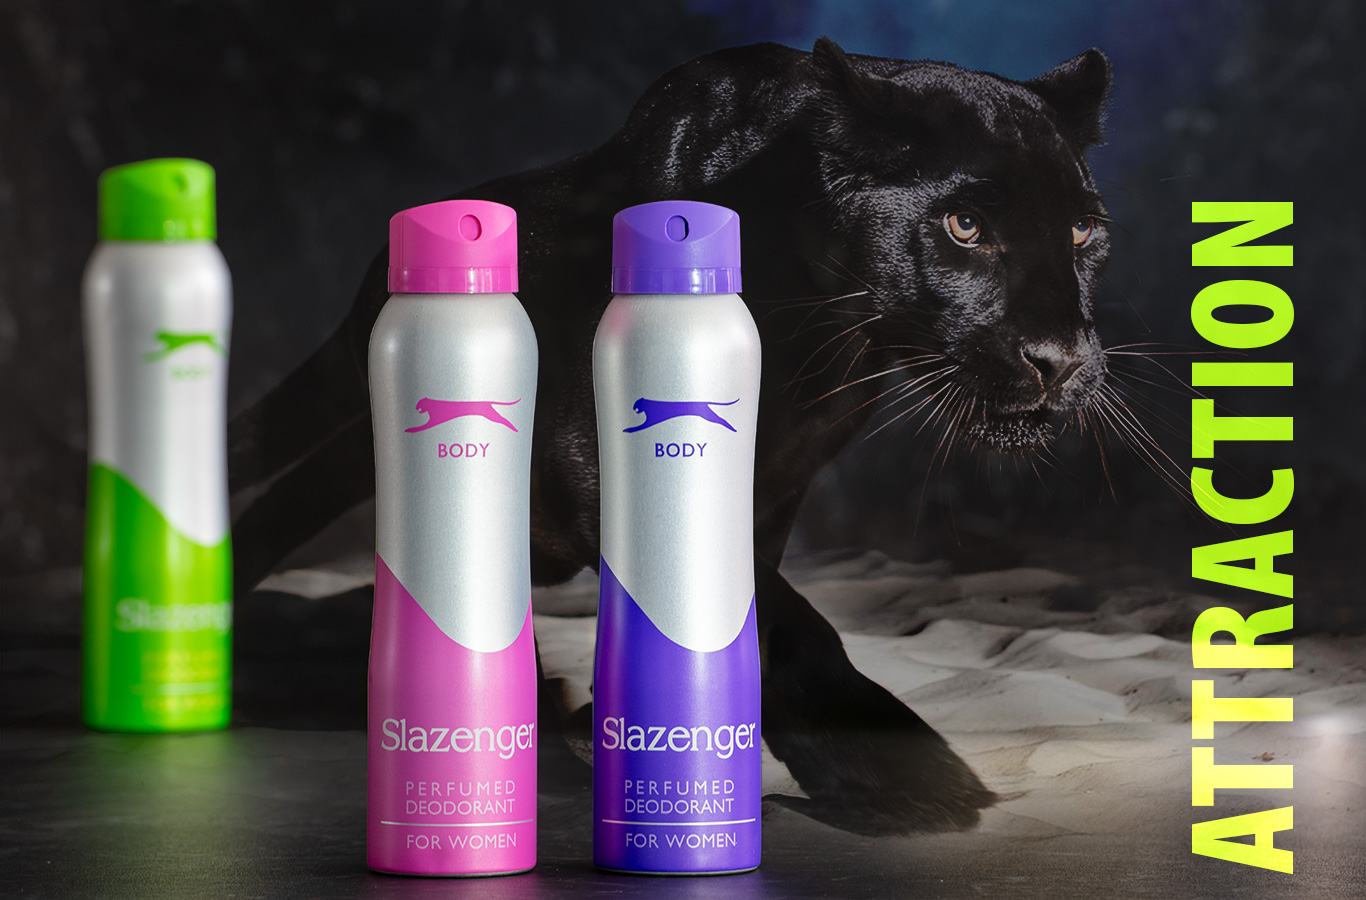 Slazenger's deodorants